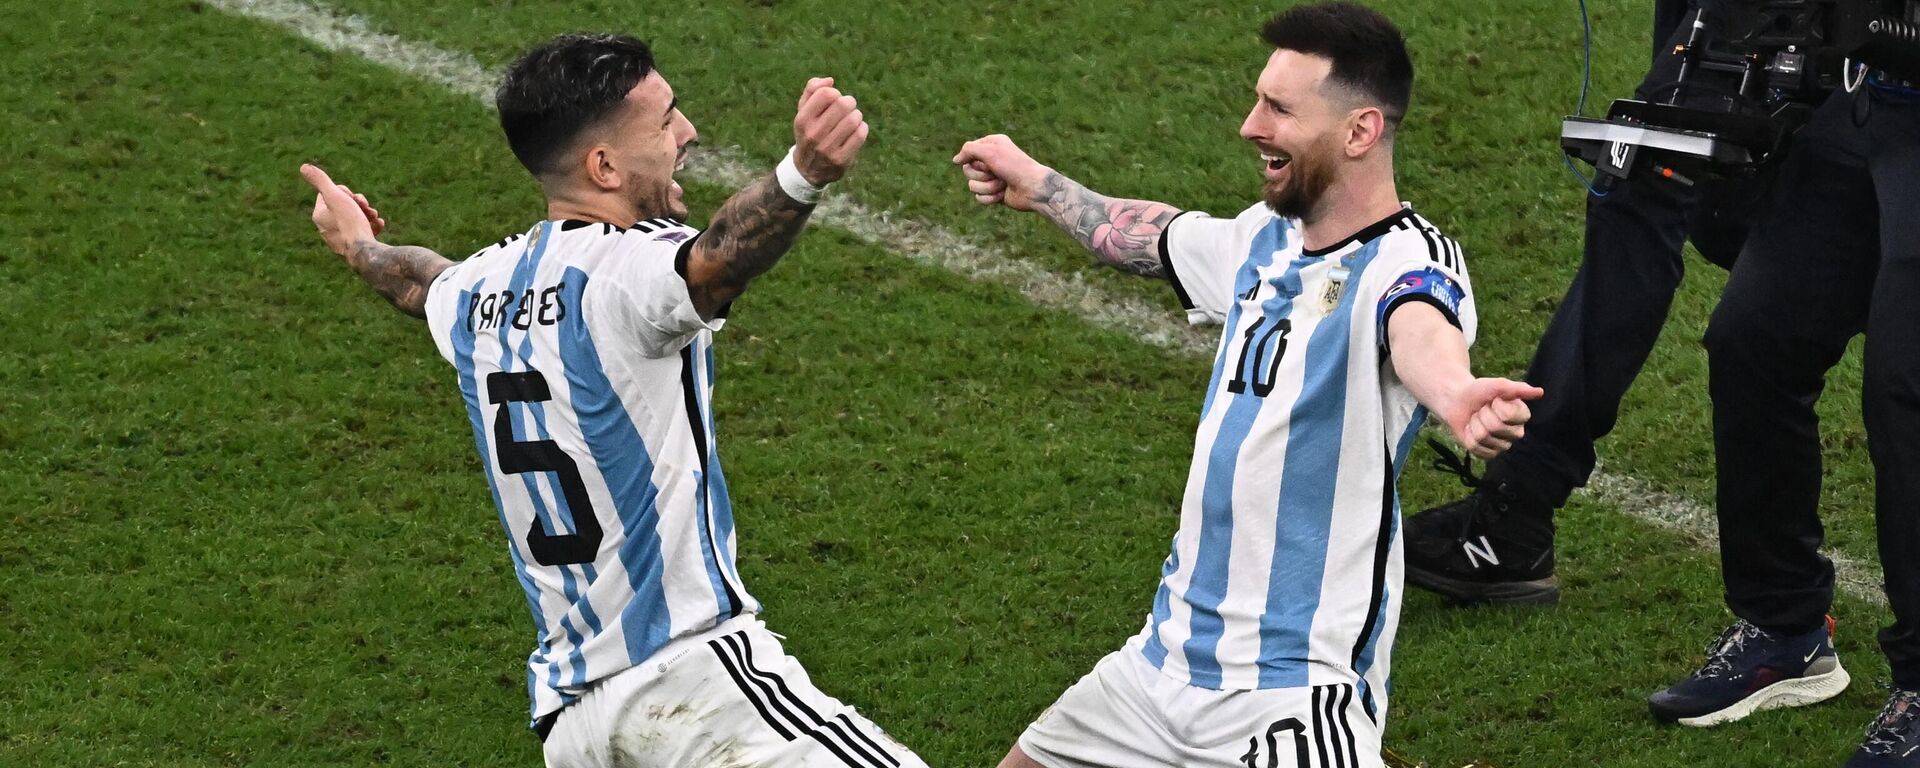 Các cầu thủ Argentina vui mừng chiến thắng trong trận chung kết World Cup giữa Argentina và Pháp cắt được ghi nhận. - Sputnik Việt Nam, 1920, 19.12.2022